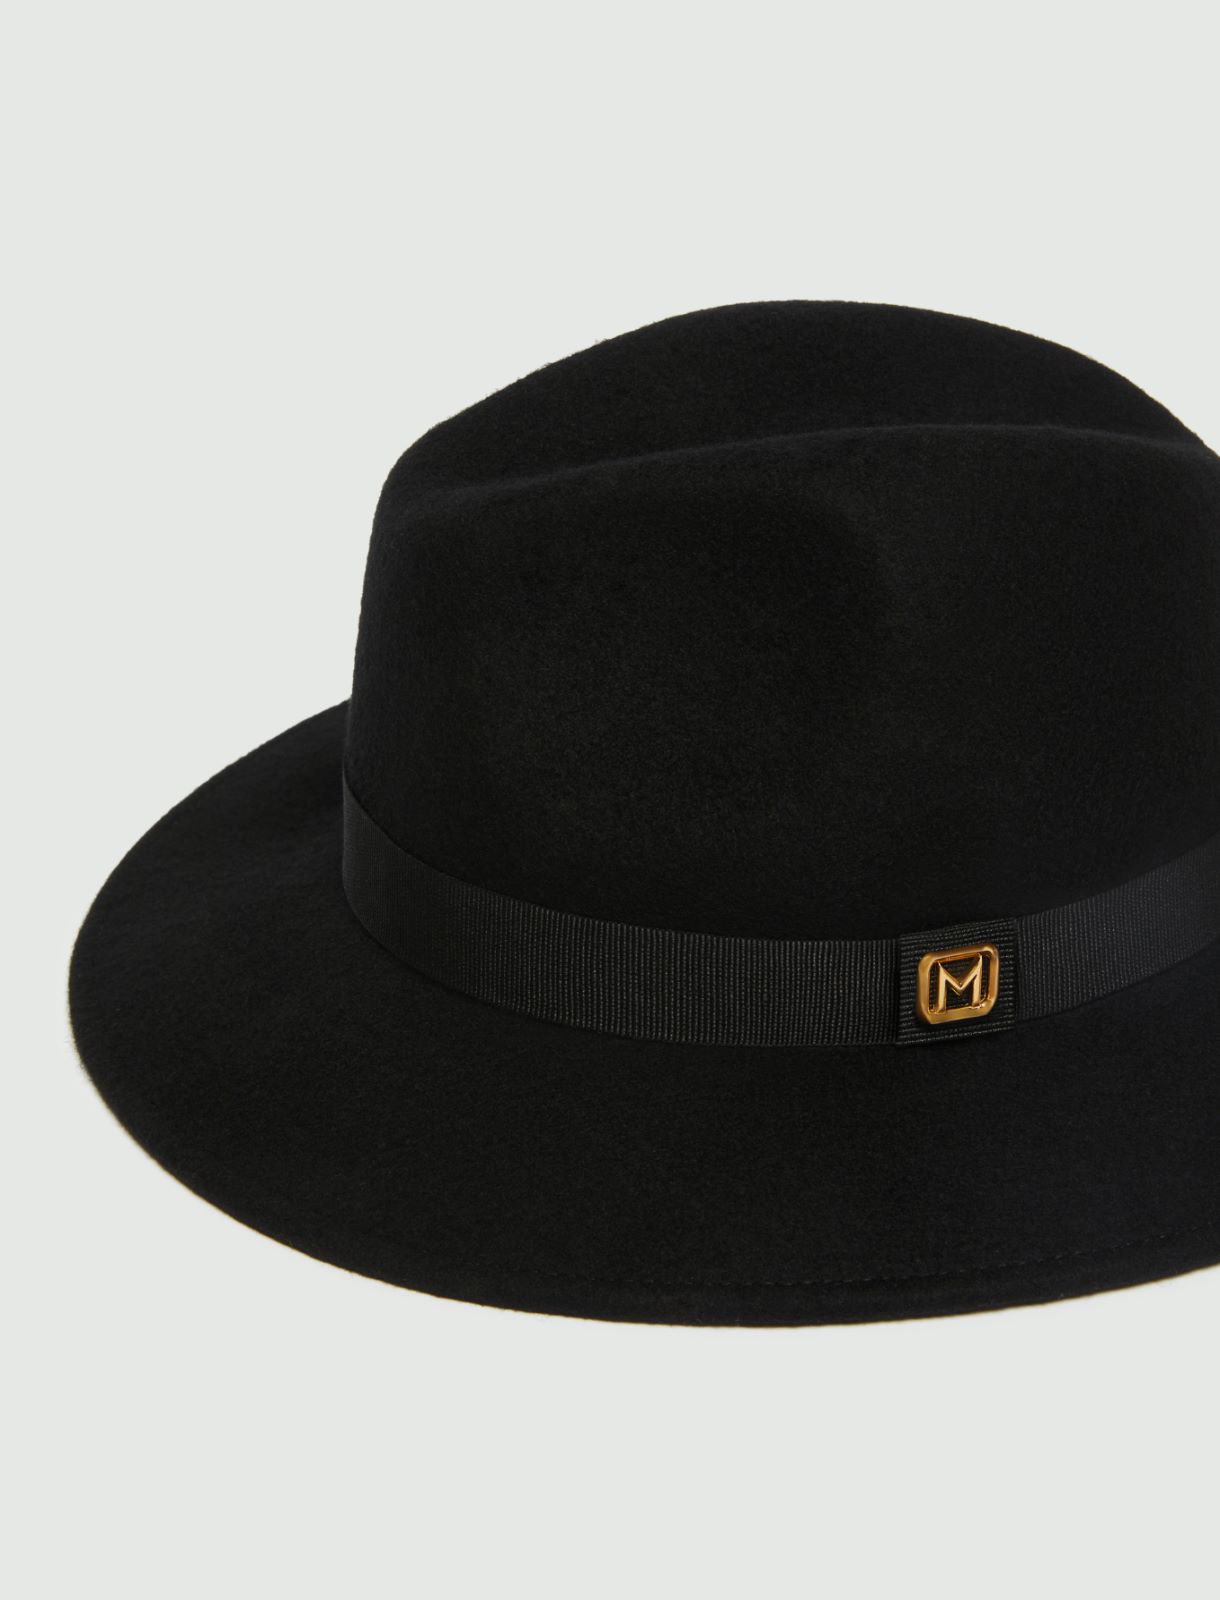 Felt hat - Black - Marella - 2